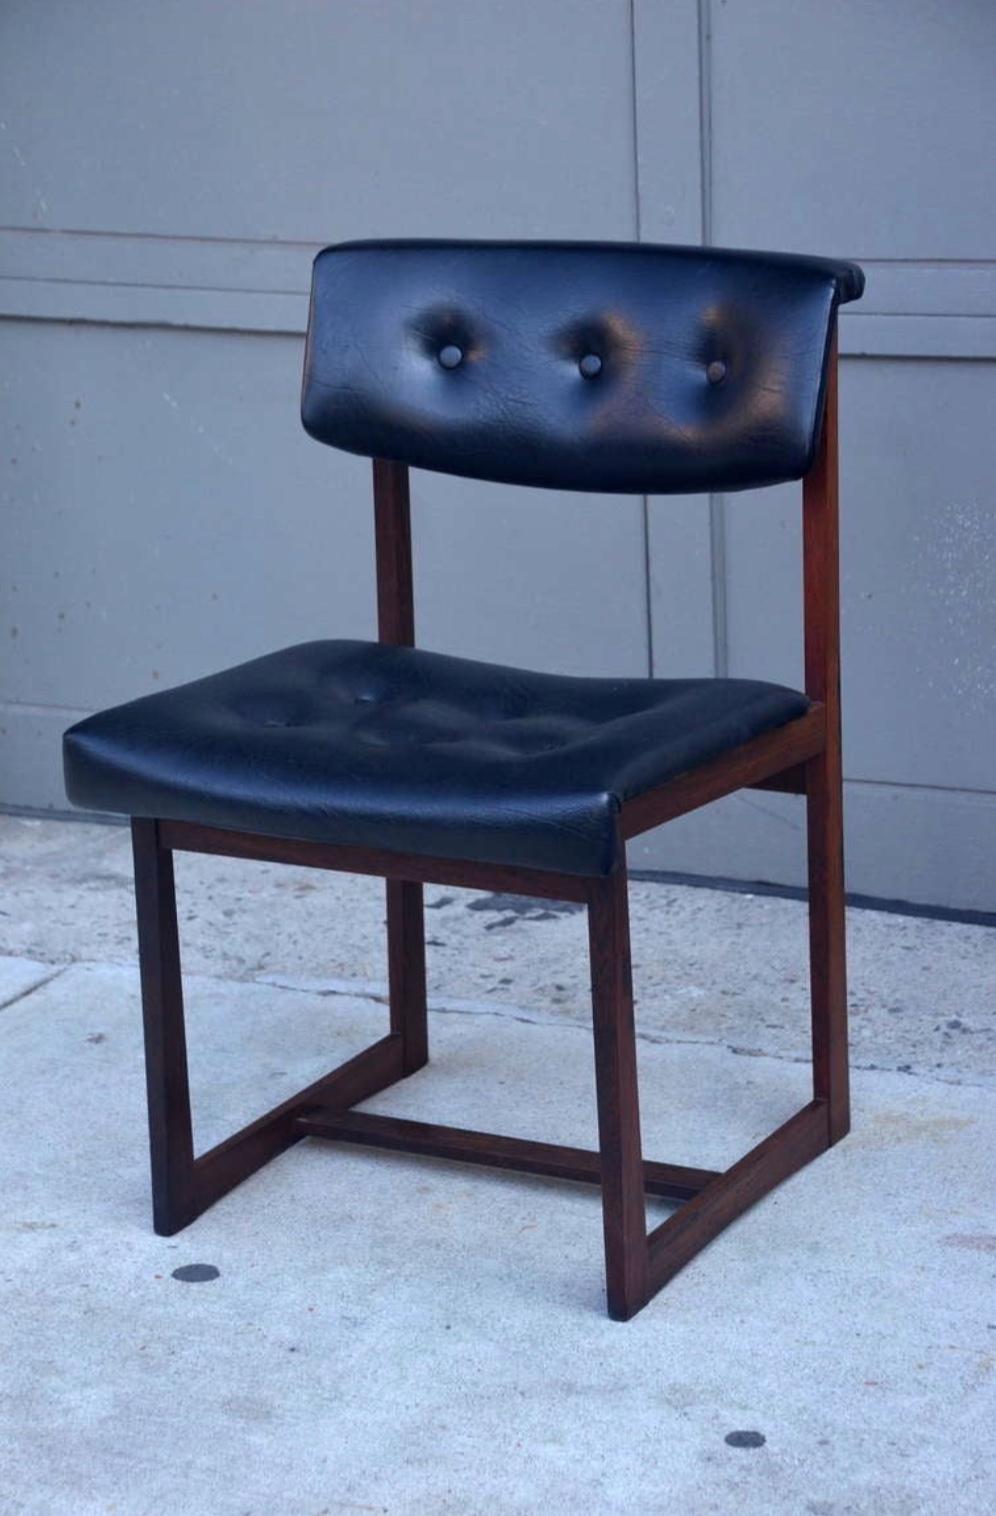 Ensemble de 6 chaises confortables en bois de rose brésilien. Robustes cadres angulaires en palissandre brésilien, revêtement d'origine en vinyle noir.